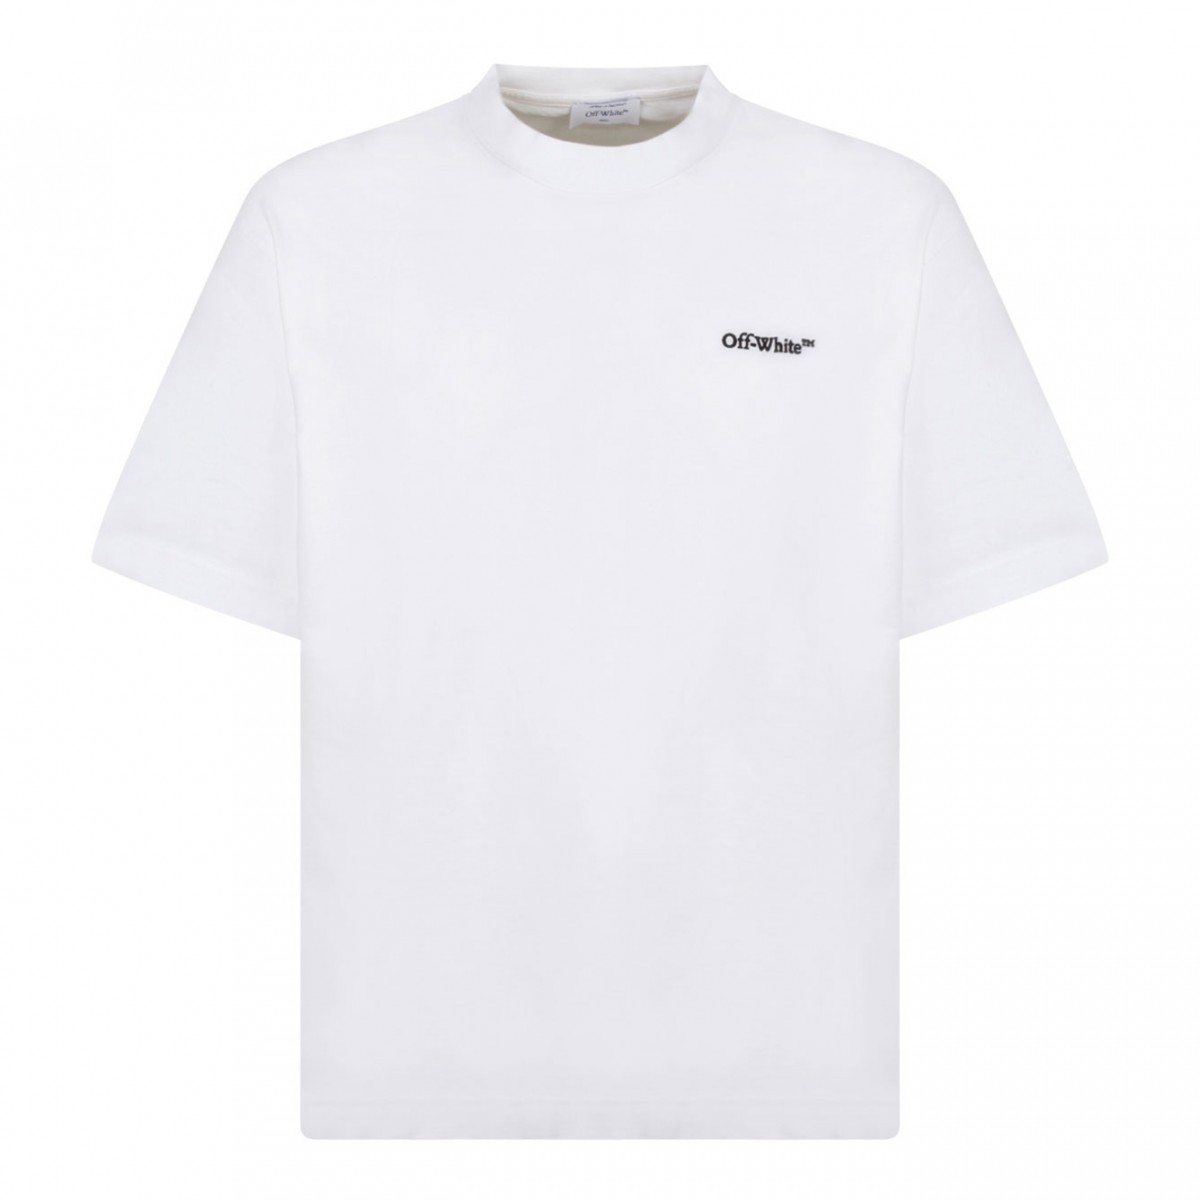 White Arrows Motif T-Shirt